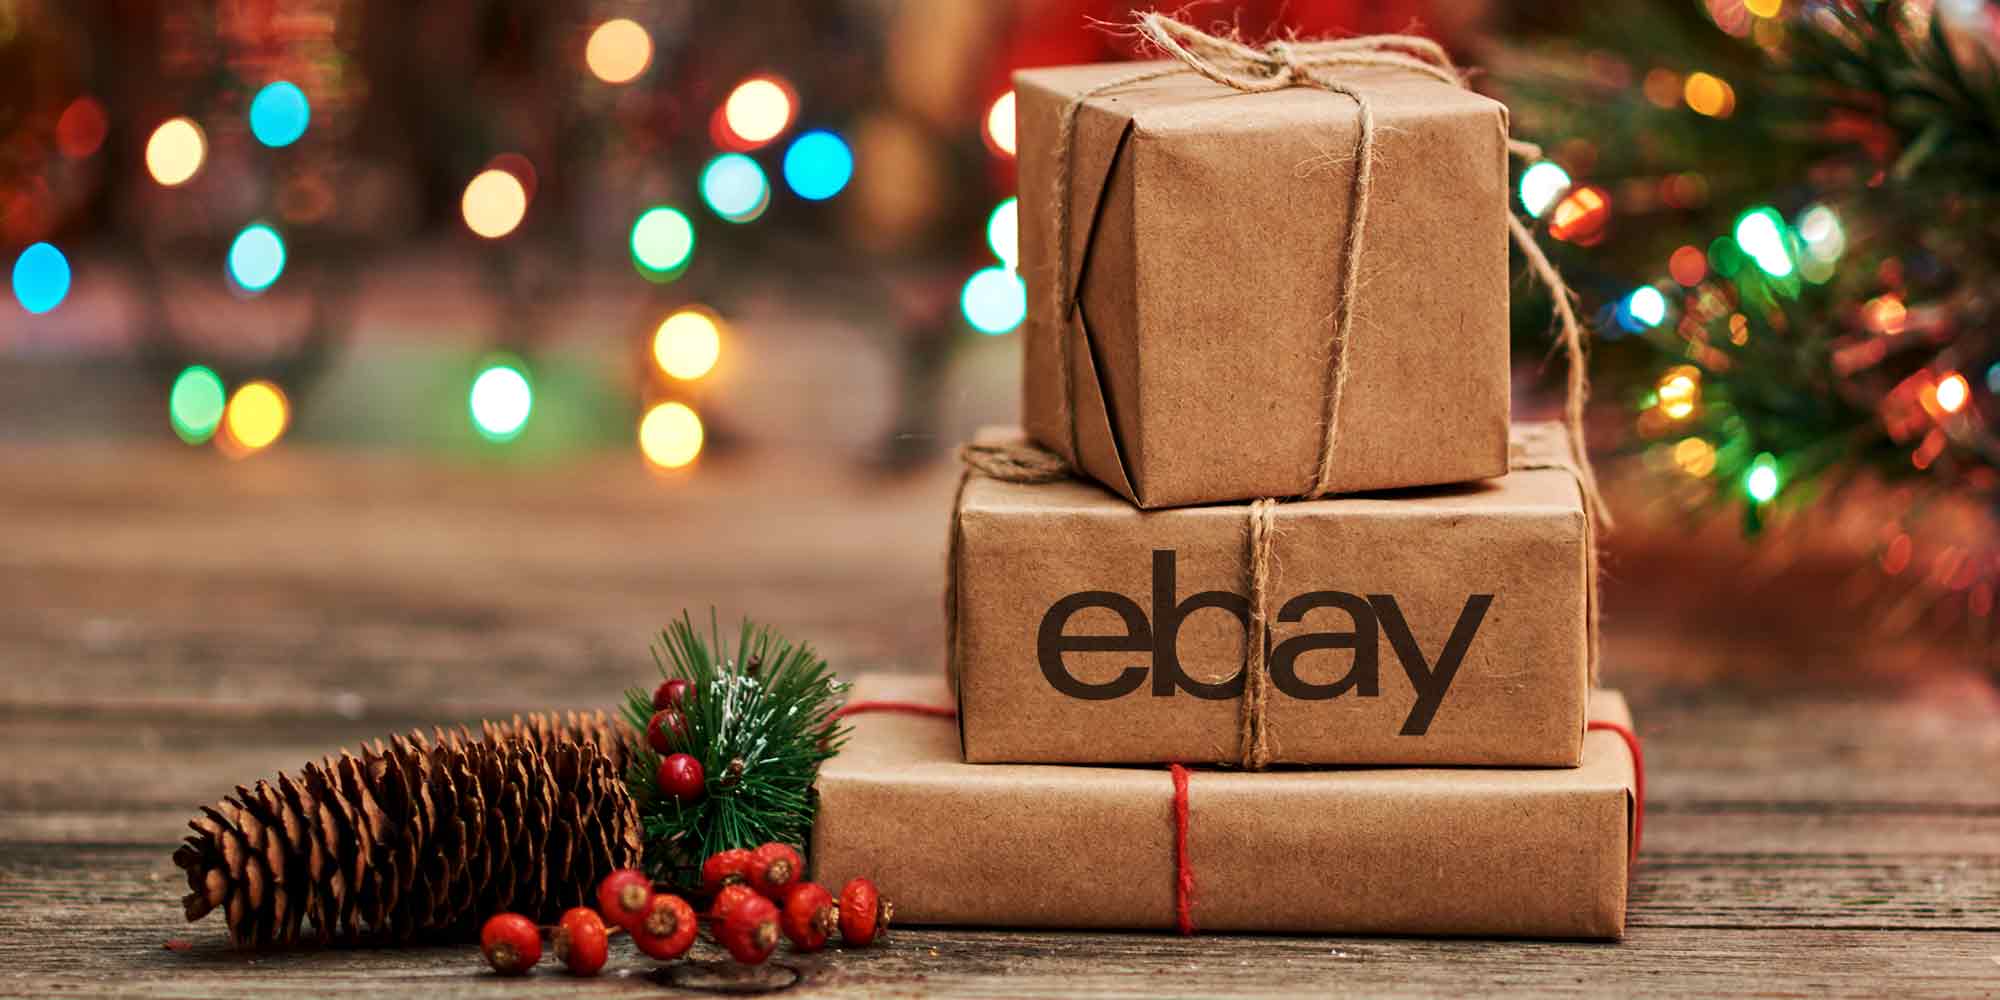 Regala una tarjeta de regalo Ebay y sé un éxito en el intercambio navideño